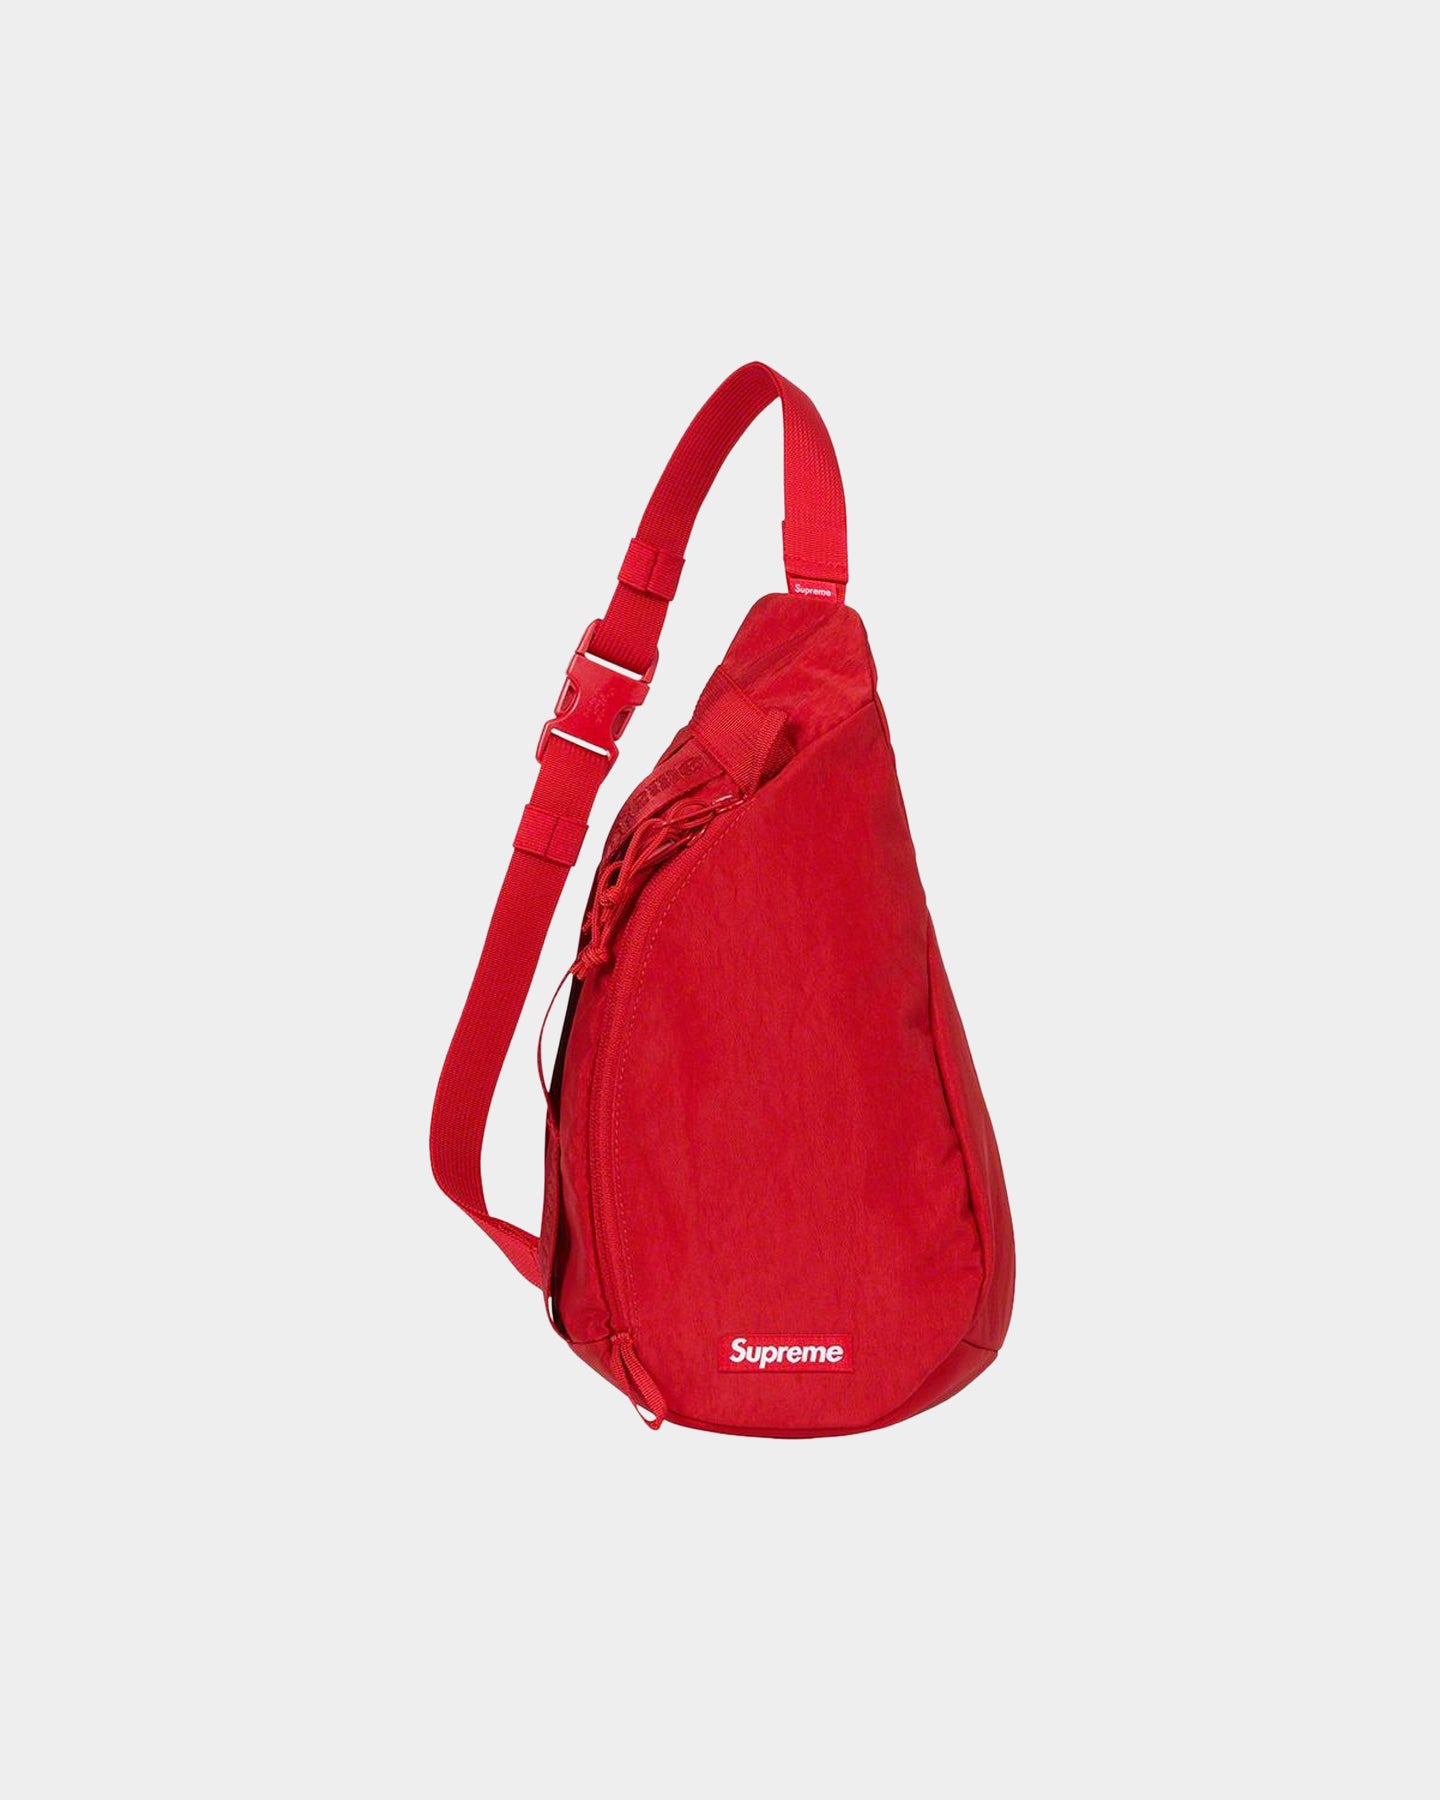 supreme red handbag